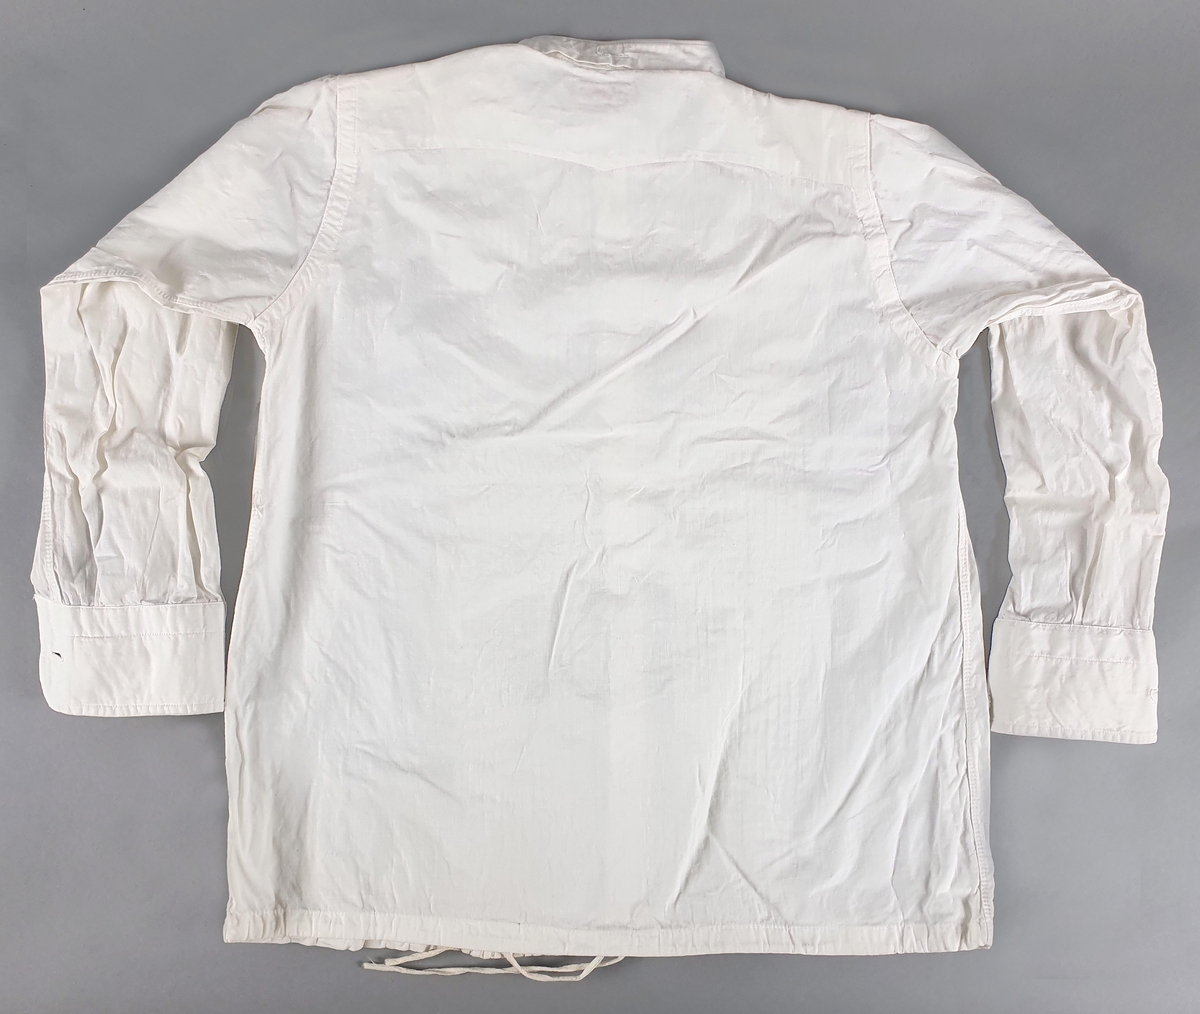 Skjorte av bomull, med vertikale dekorfolder på brystet, snor nederst. Smal linning i halsen med svart mansjettknapp. Hvite knapper midt foran. Skjortene er stivet.